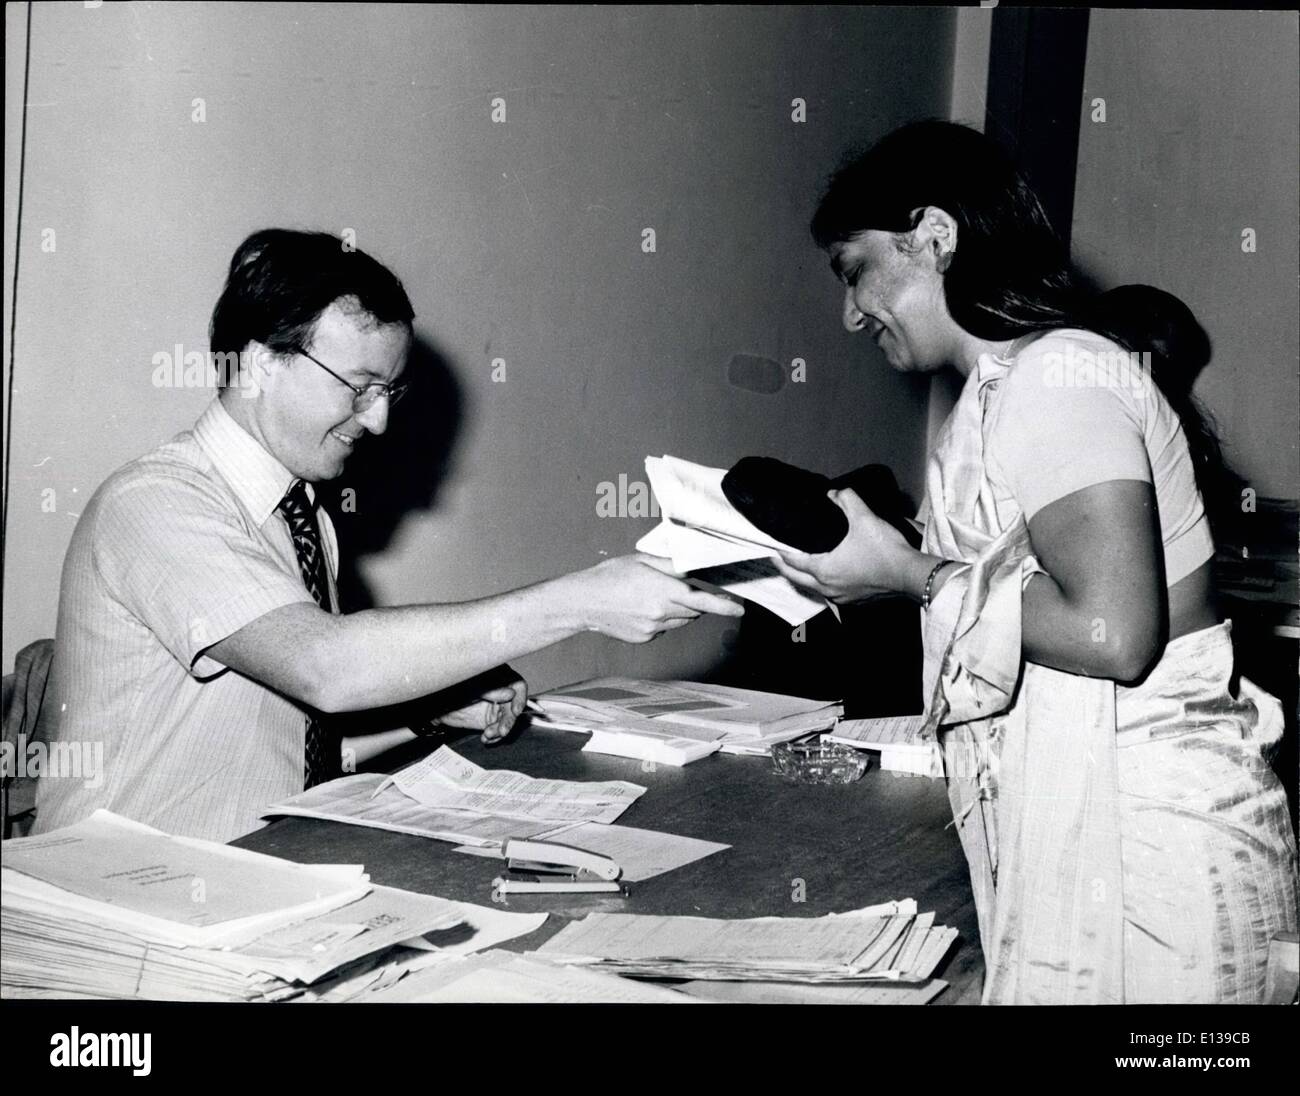 Febrero 29, 2012 - Canadian procesos oficiales, una mujer asiática su solicitud a la alta comisión en Kampala. Foto de stock